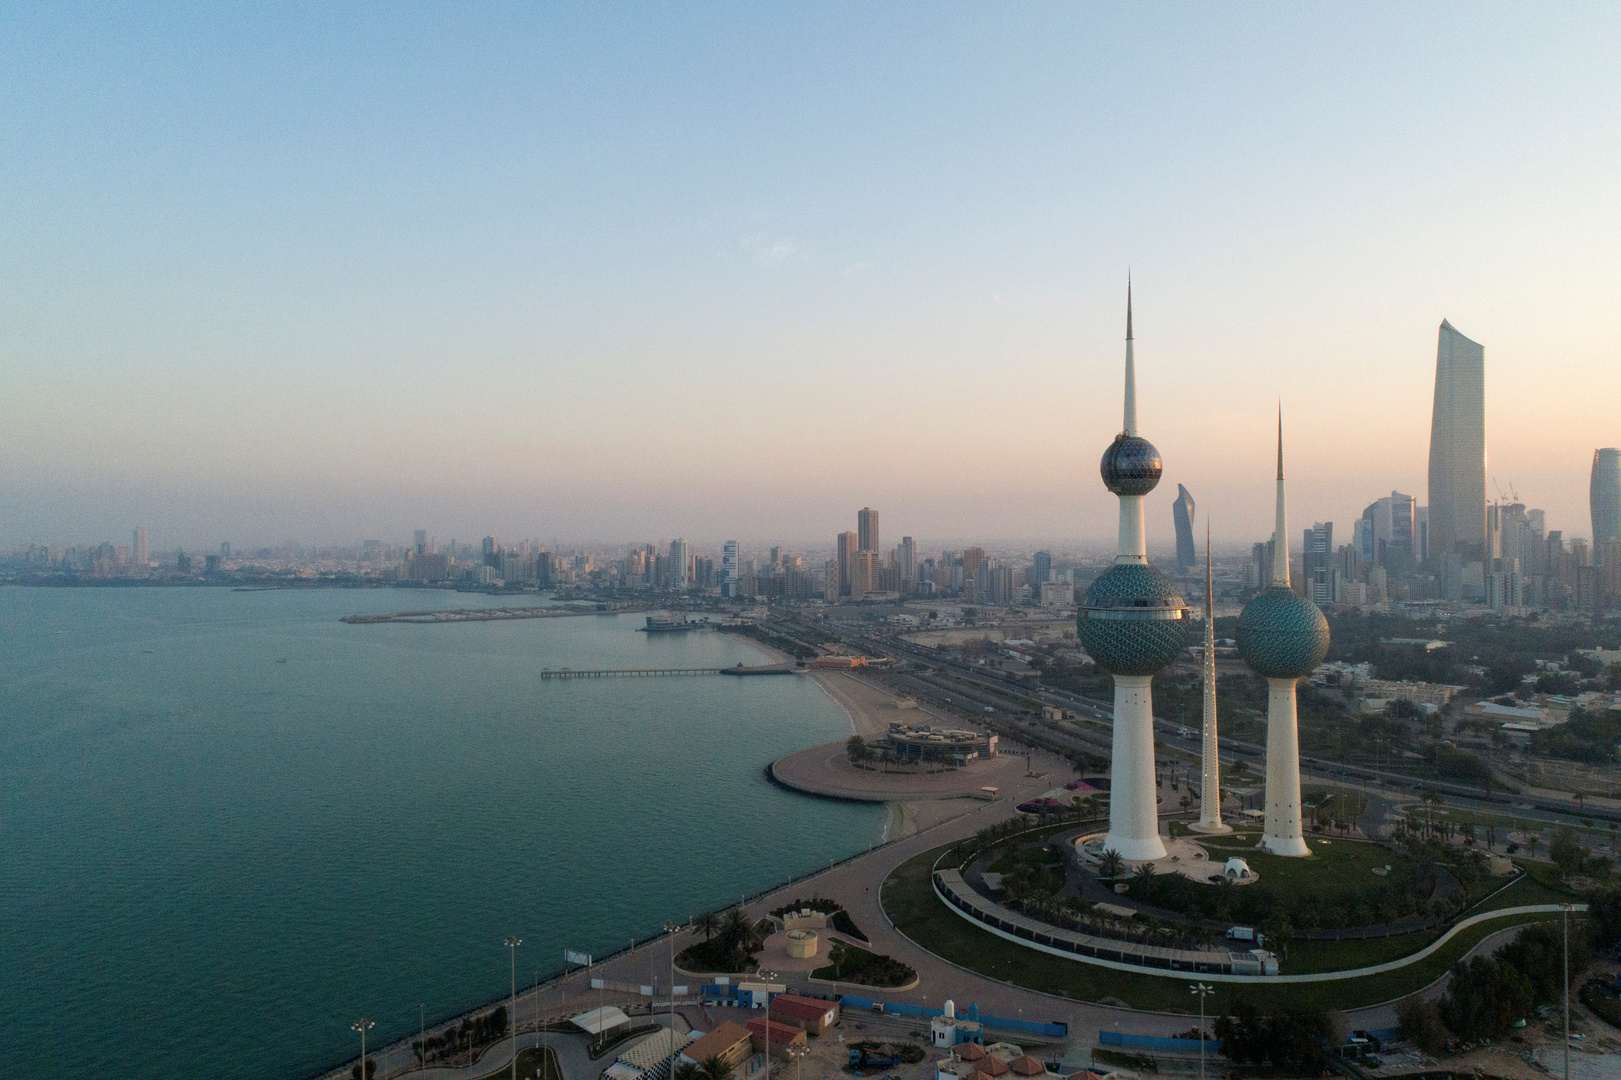 رئيس الوزراء الكويتي: إذا لم نتعاون ونتكاتف سيكون الوضع صعبا